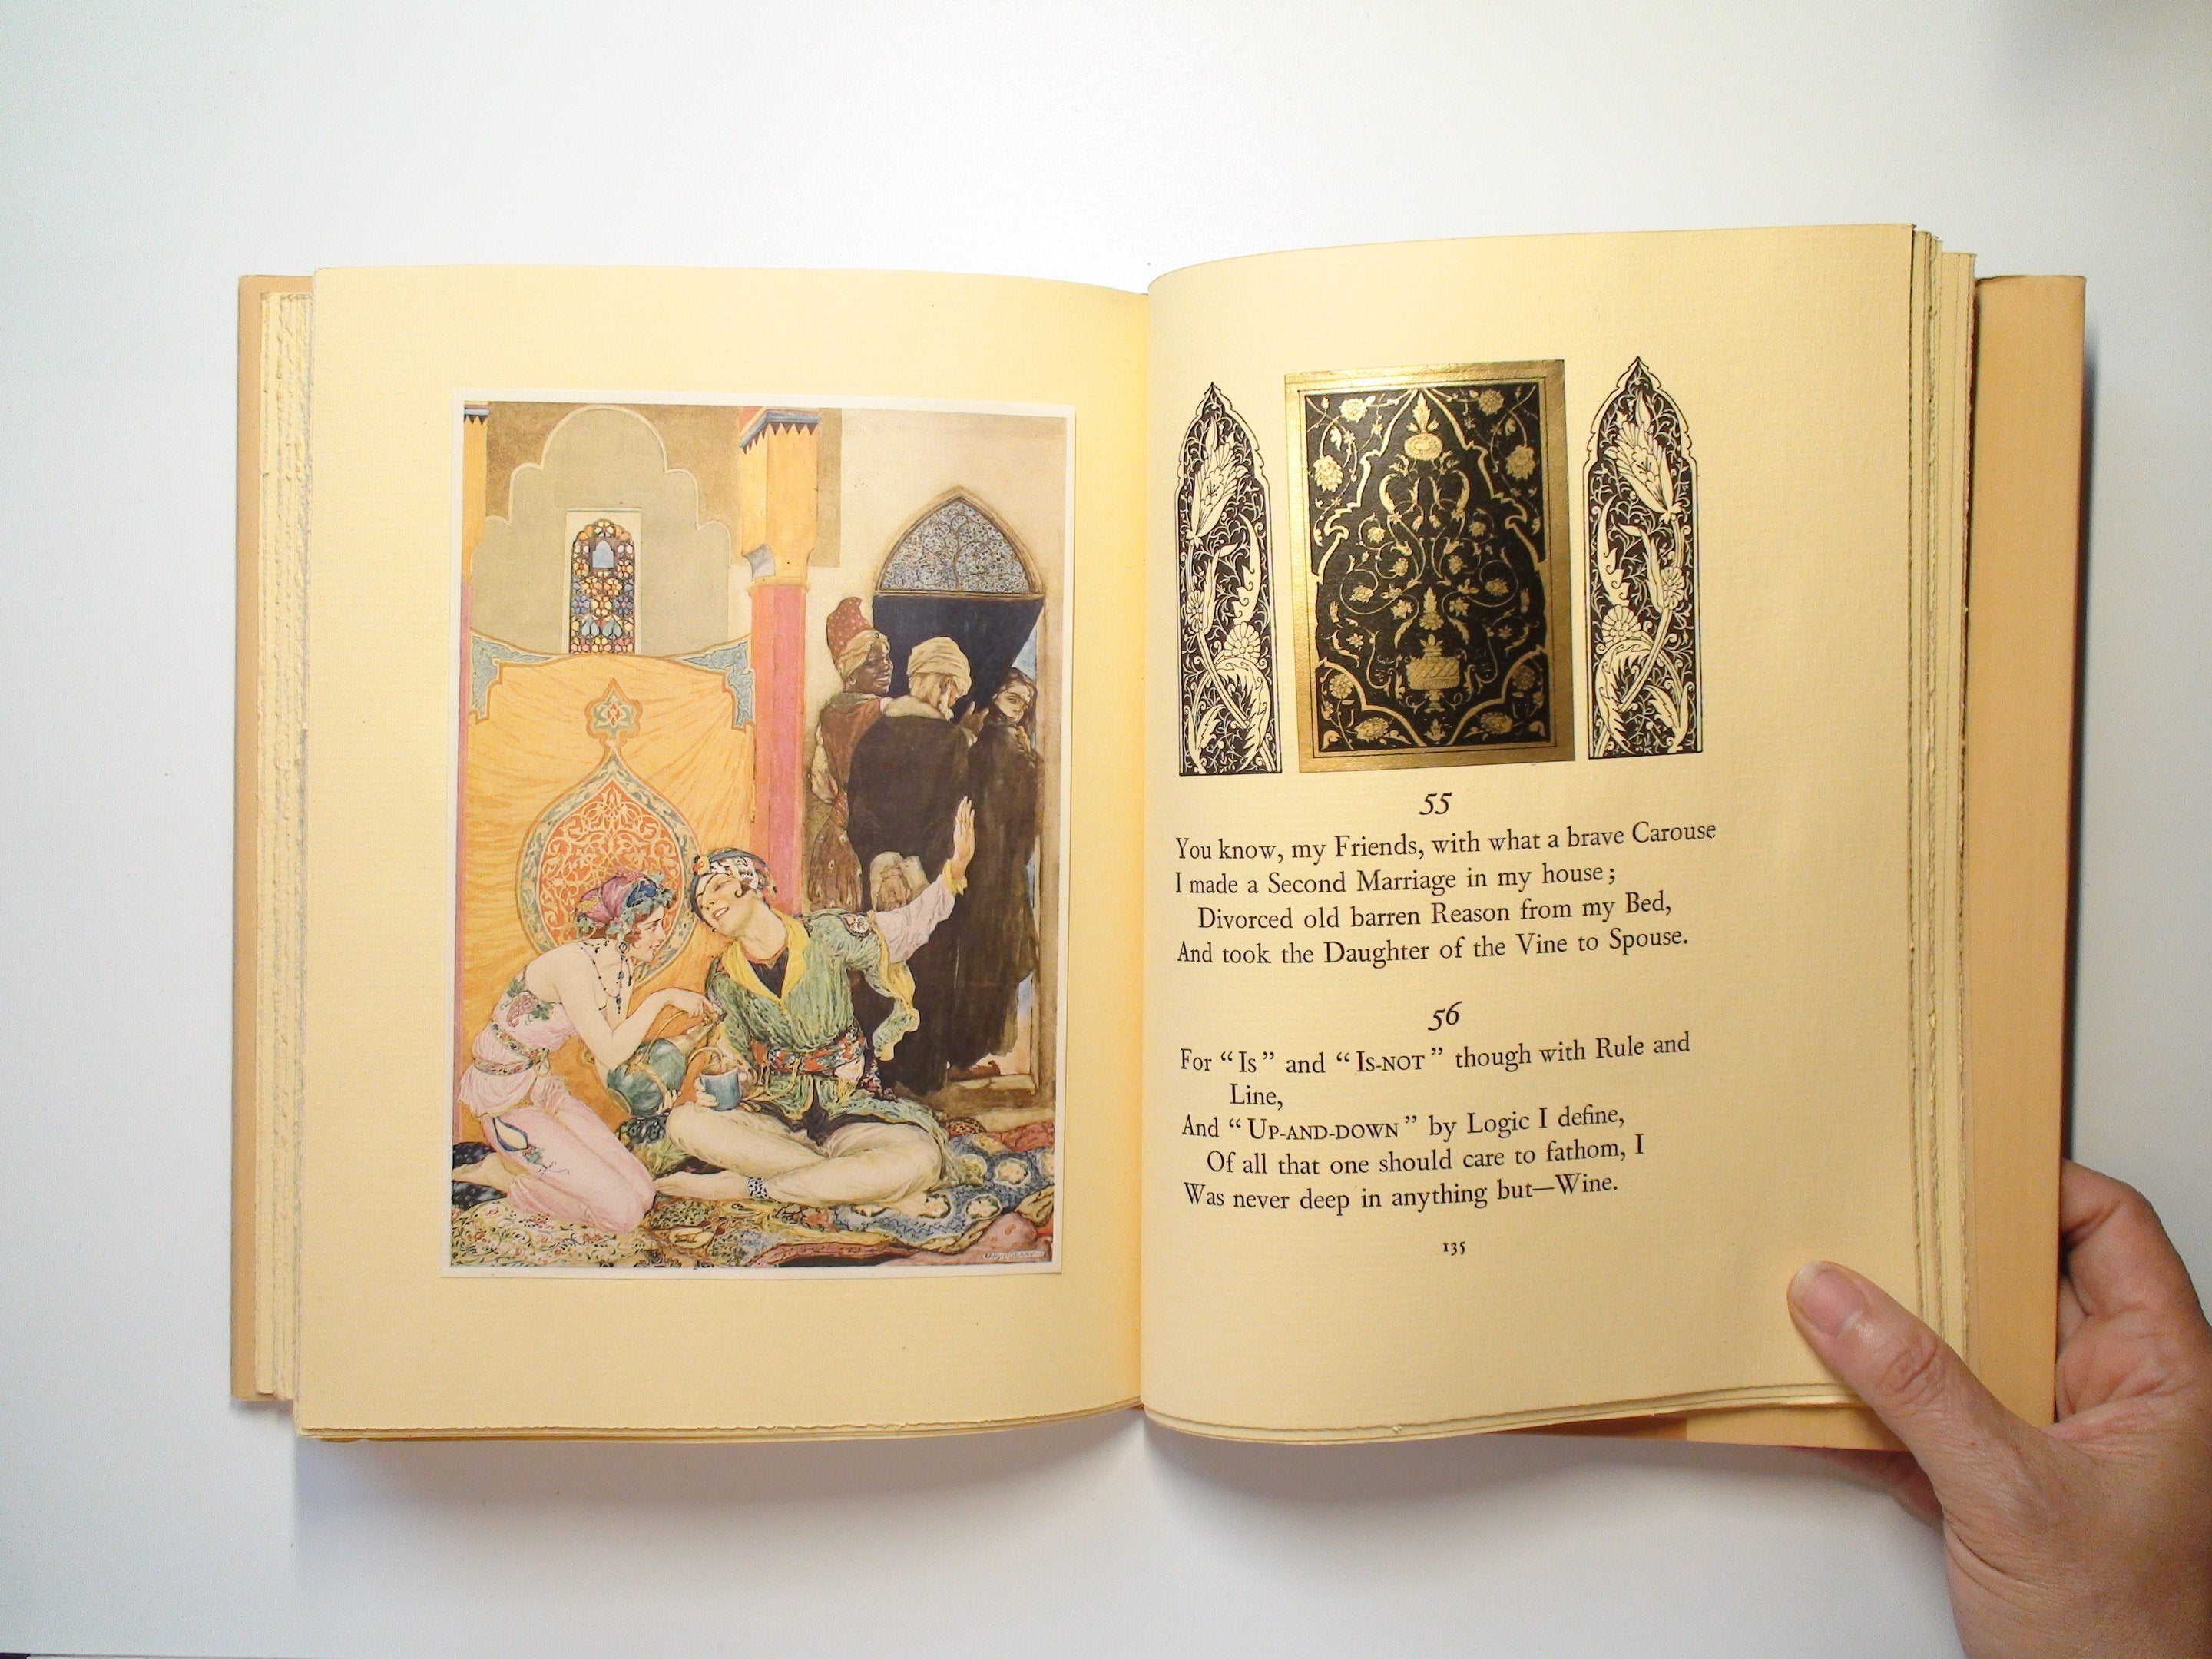 Rubaiyat of Omar Khayyam, Illustrated by Willy Pogany, 1st Ed, in Original Box